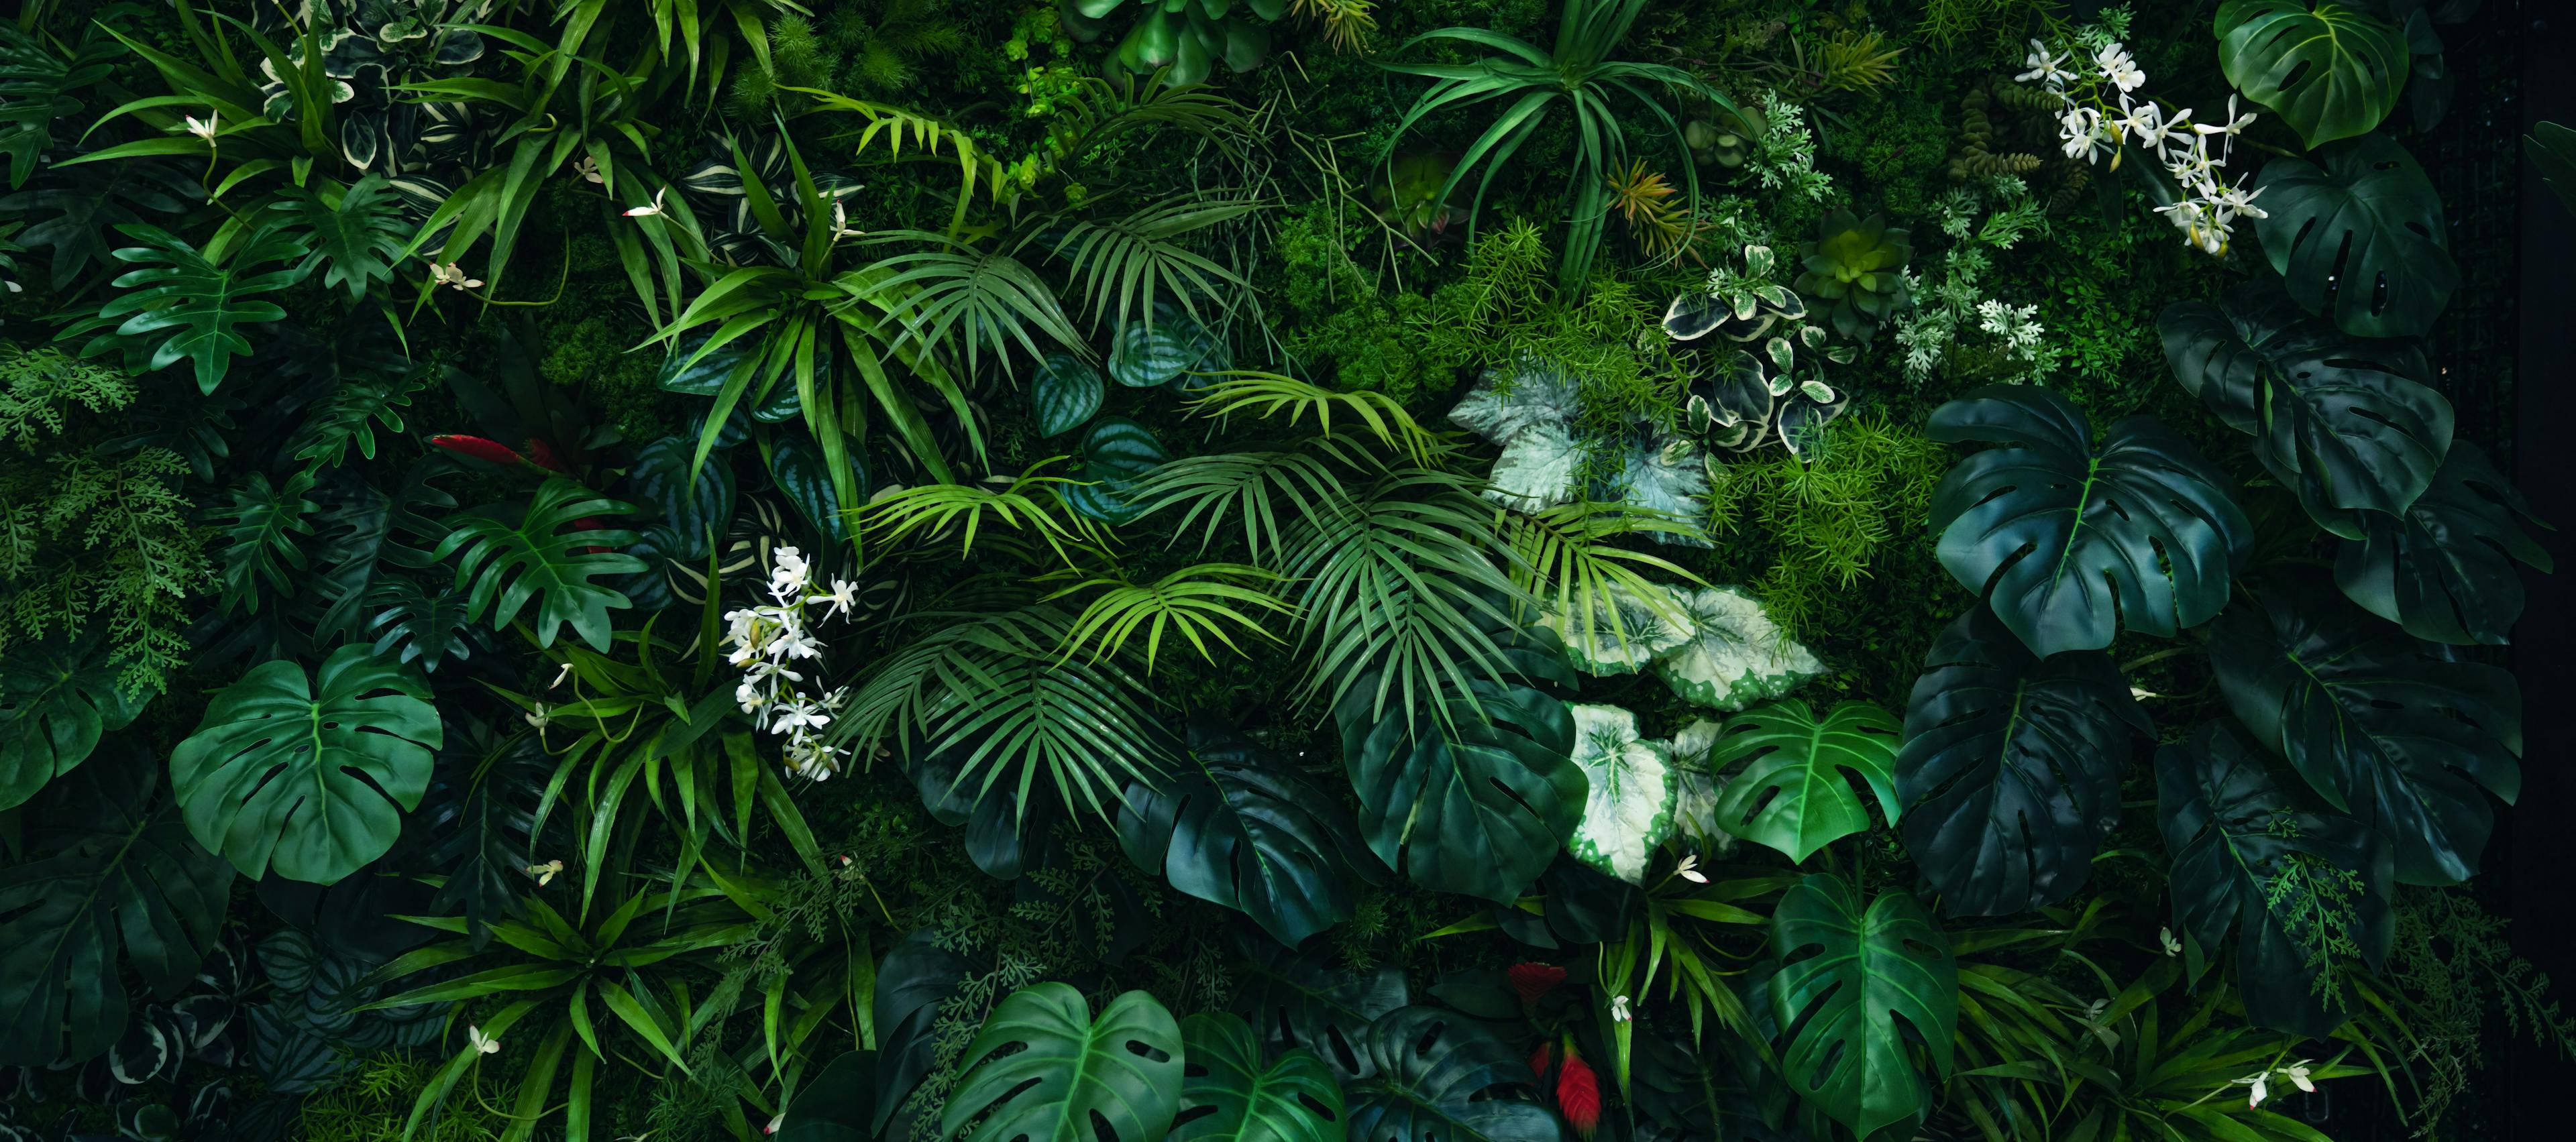 Creative nature green background, tropical leaf banner or floral jungle pattern concept. | Image Credit: © kelvn - stock.adobe.com.